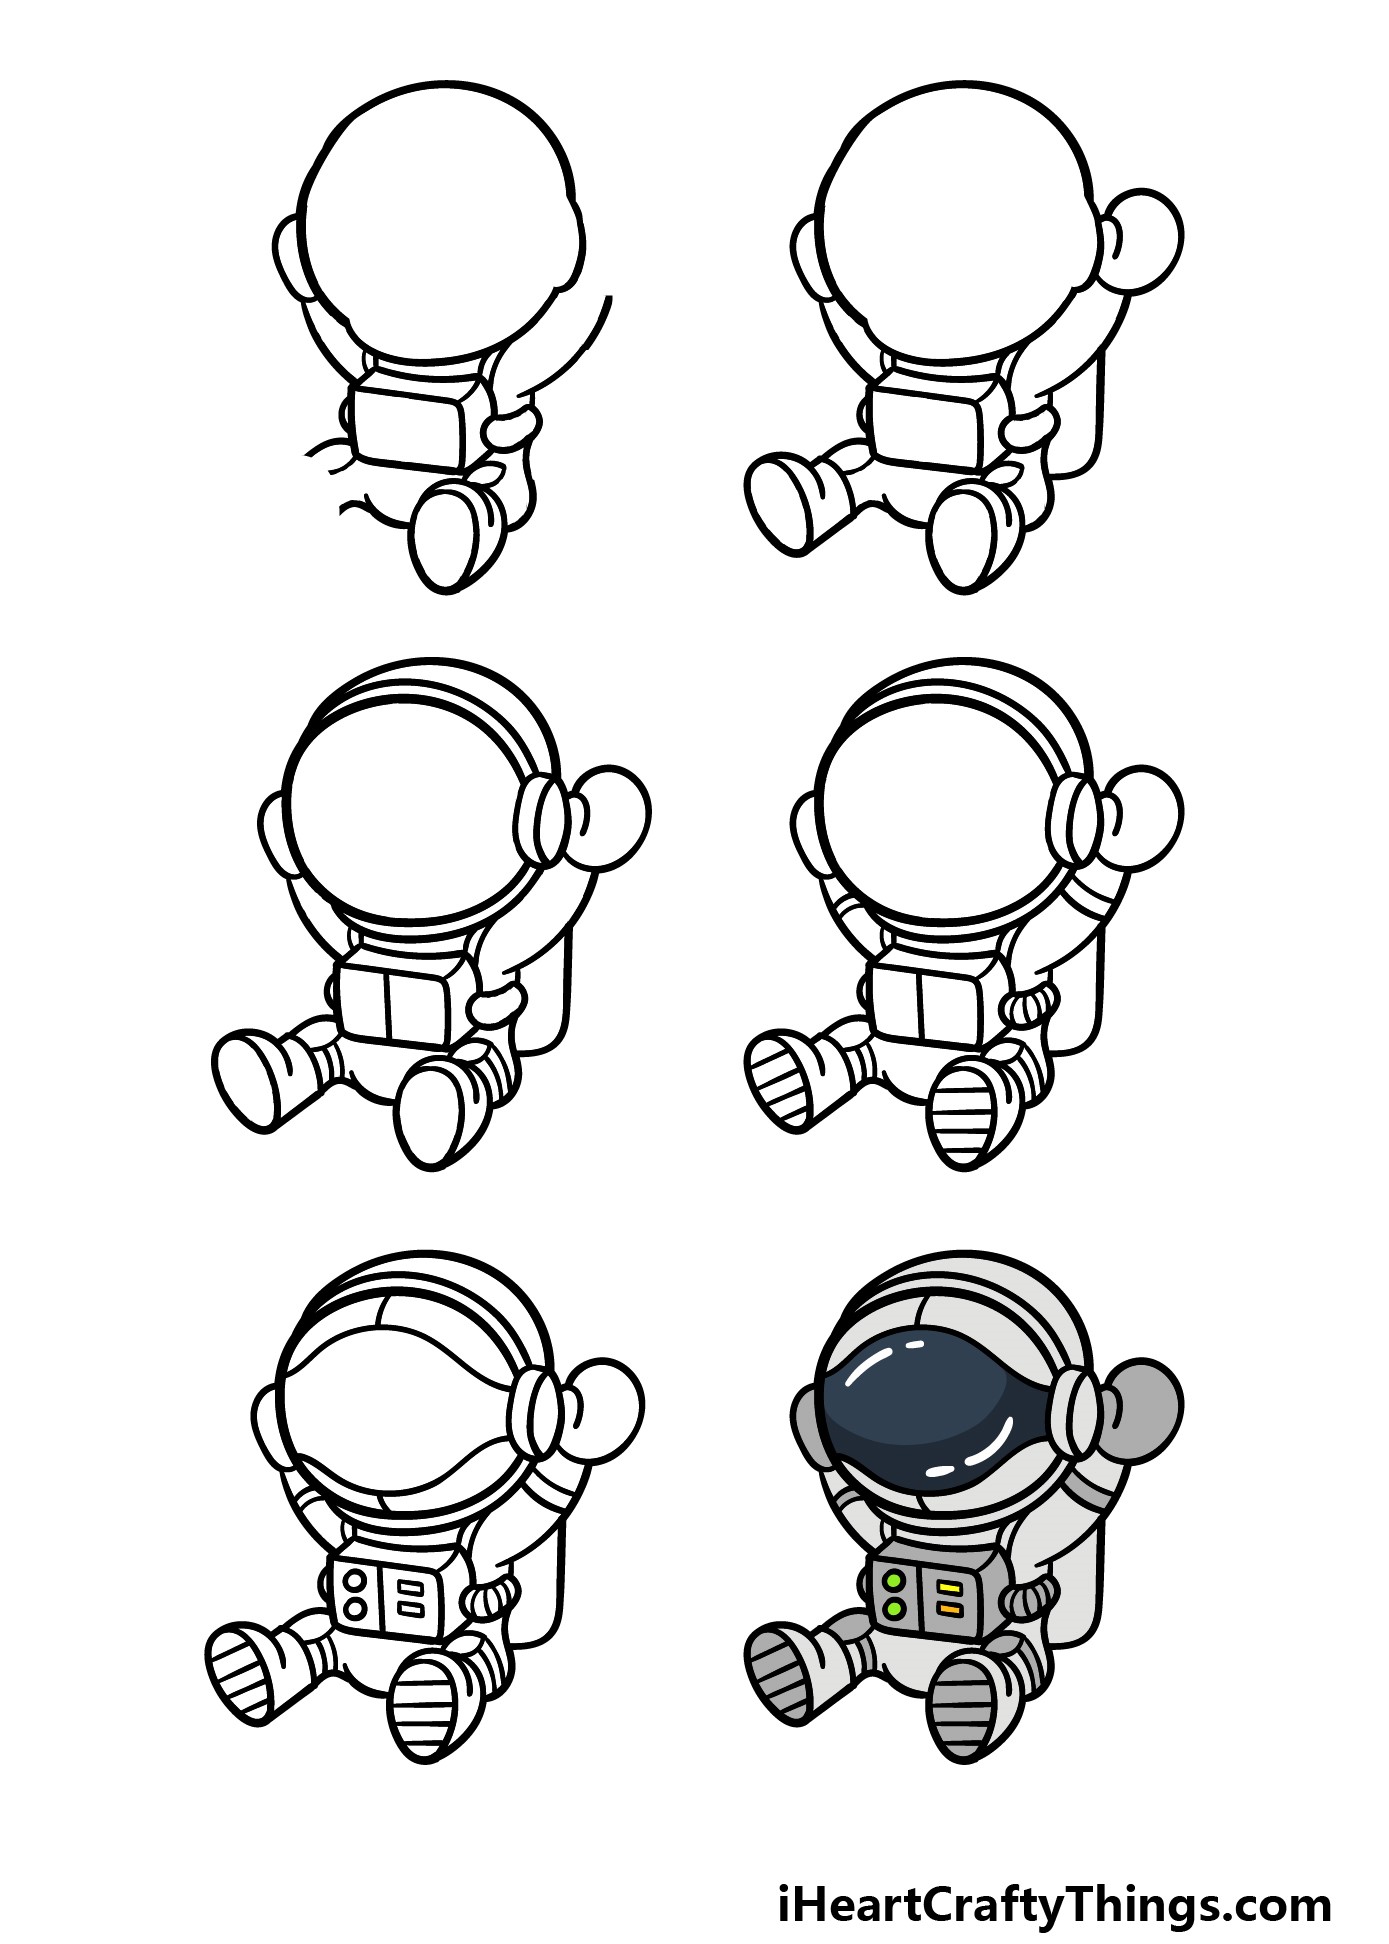 Idée d'astronaute 6 dessin